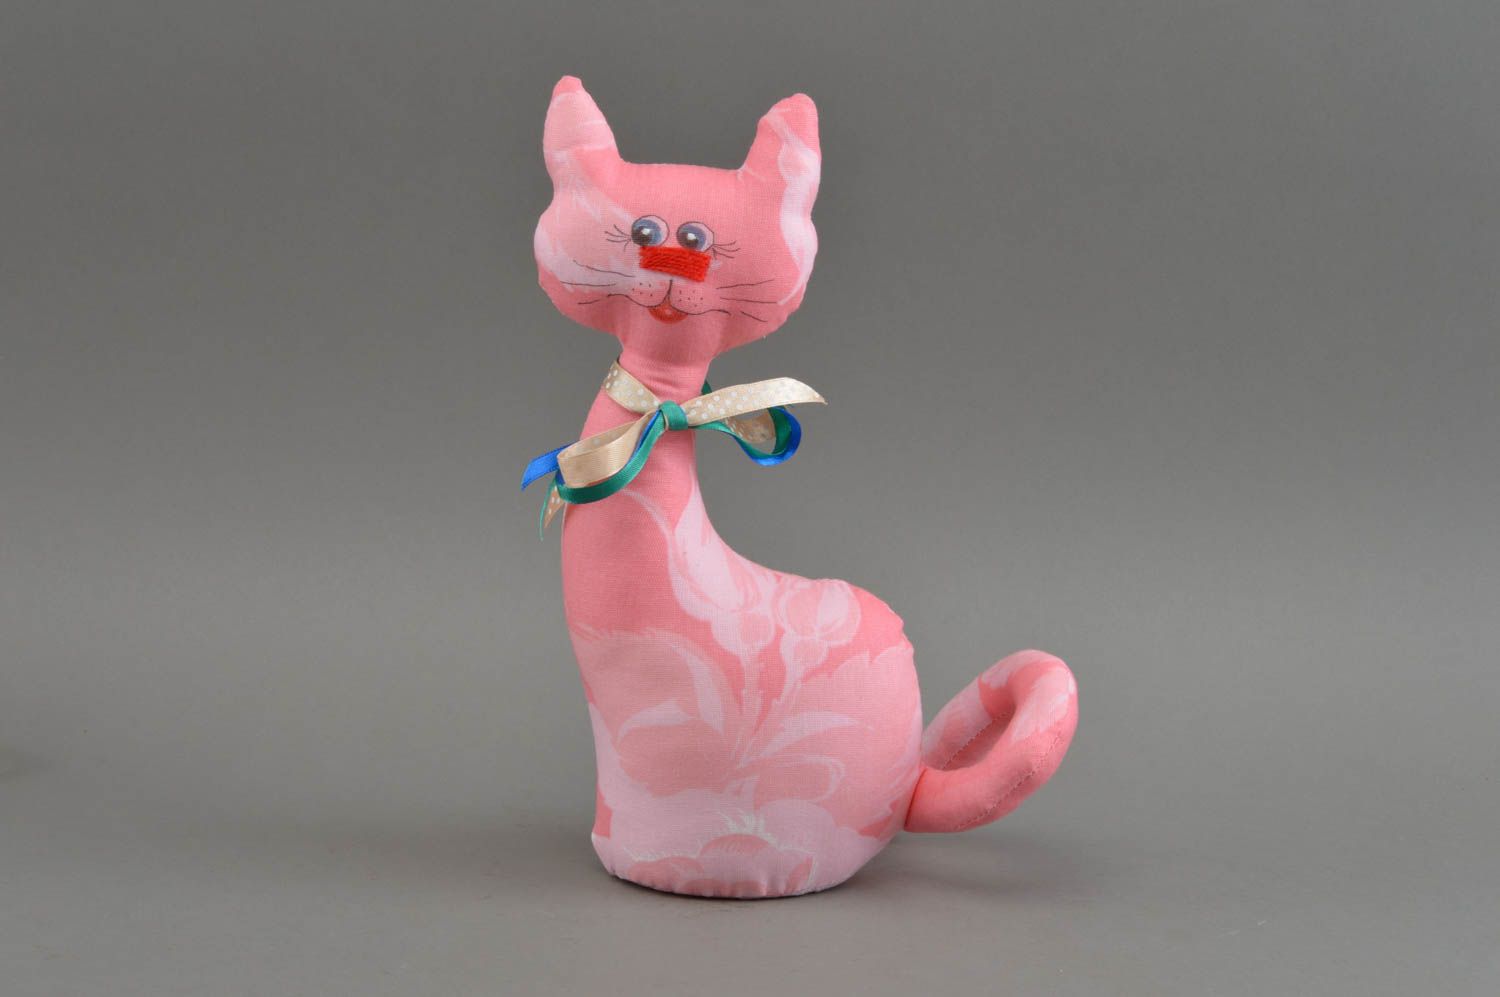 Тканевая игрушка в виде кошки небольшая розовая красивая милая ручной работы фото 2